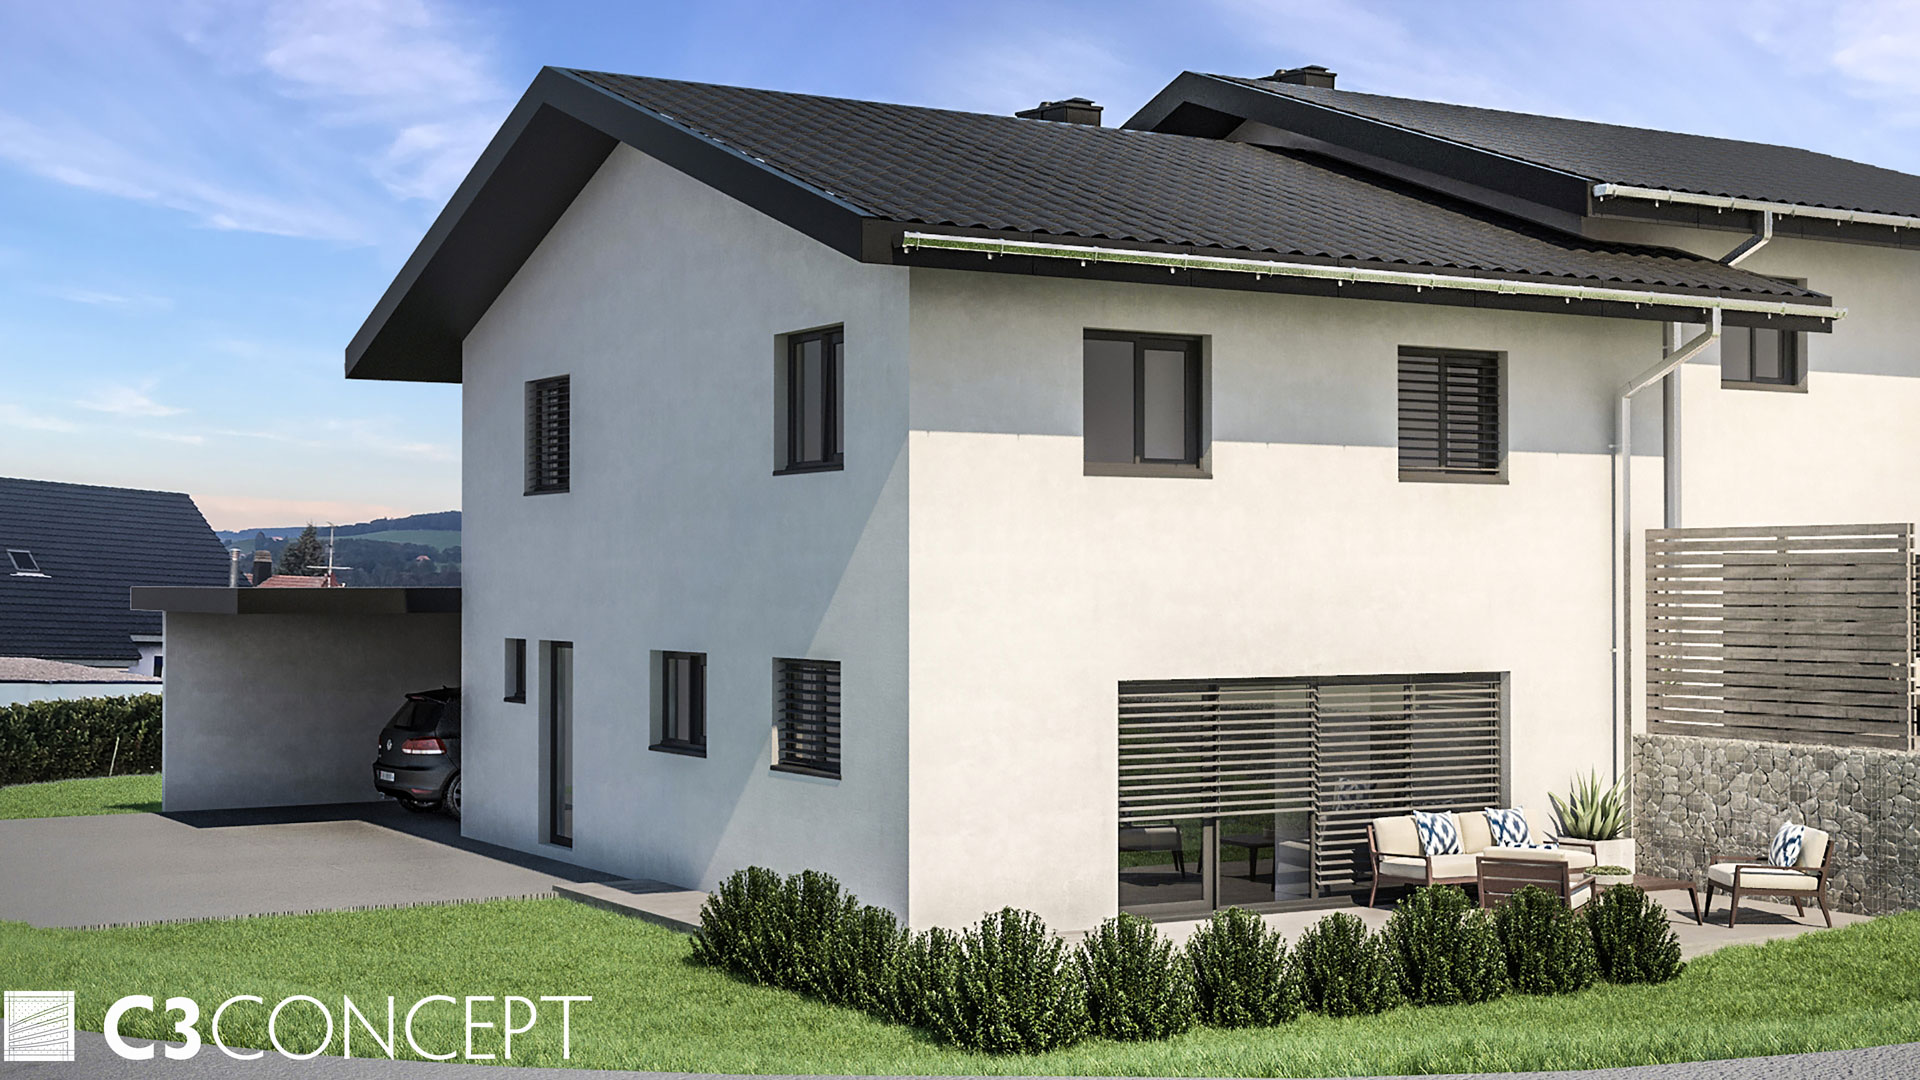 C3 Concept, visualisation 3D à Bulle. villas jumelées Vuisternens extérieur